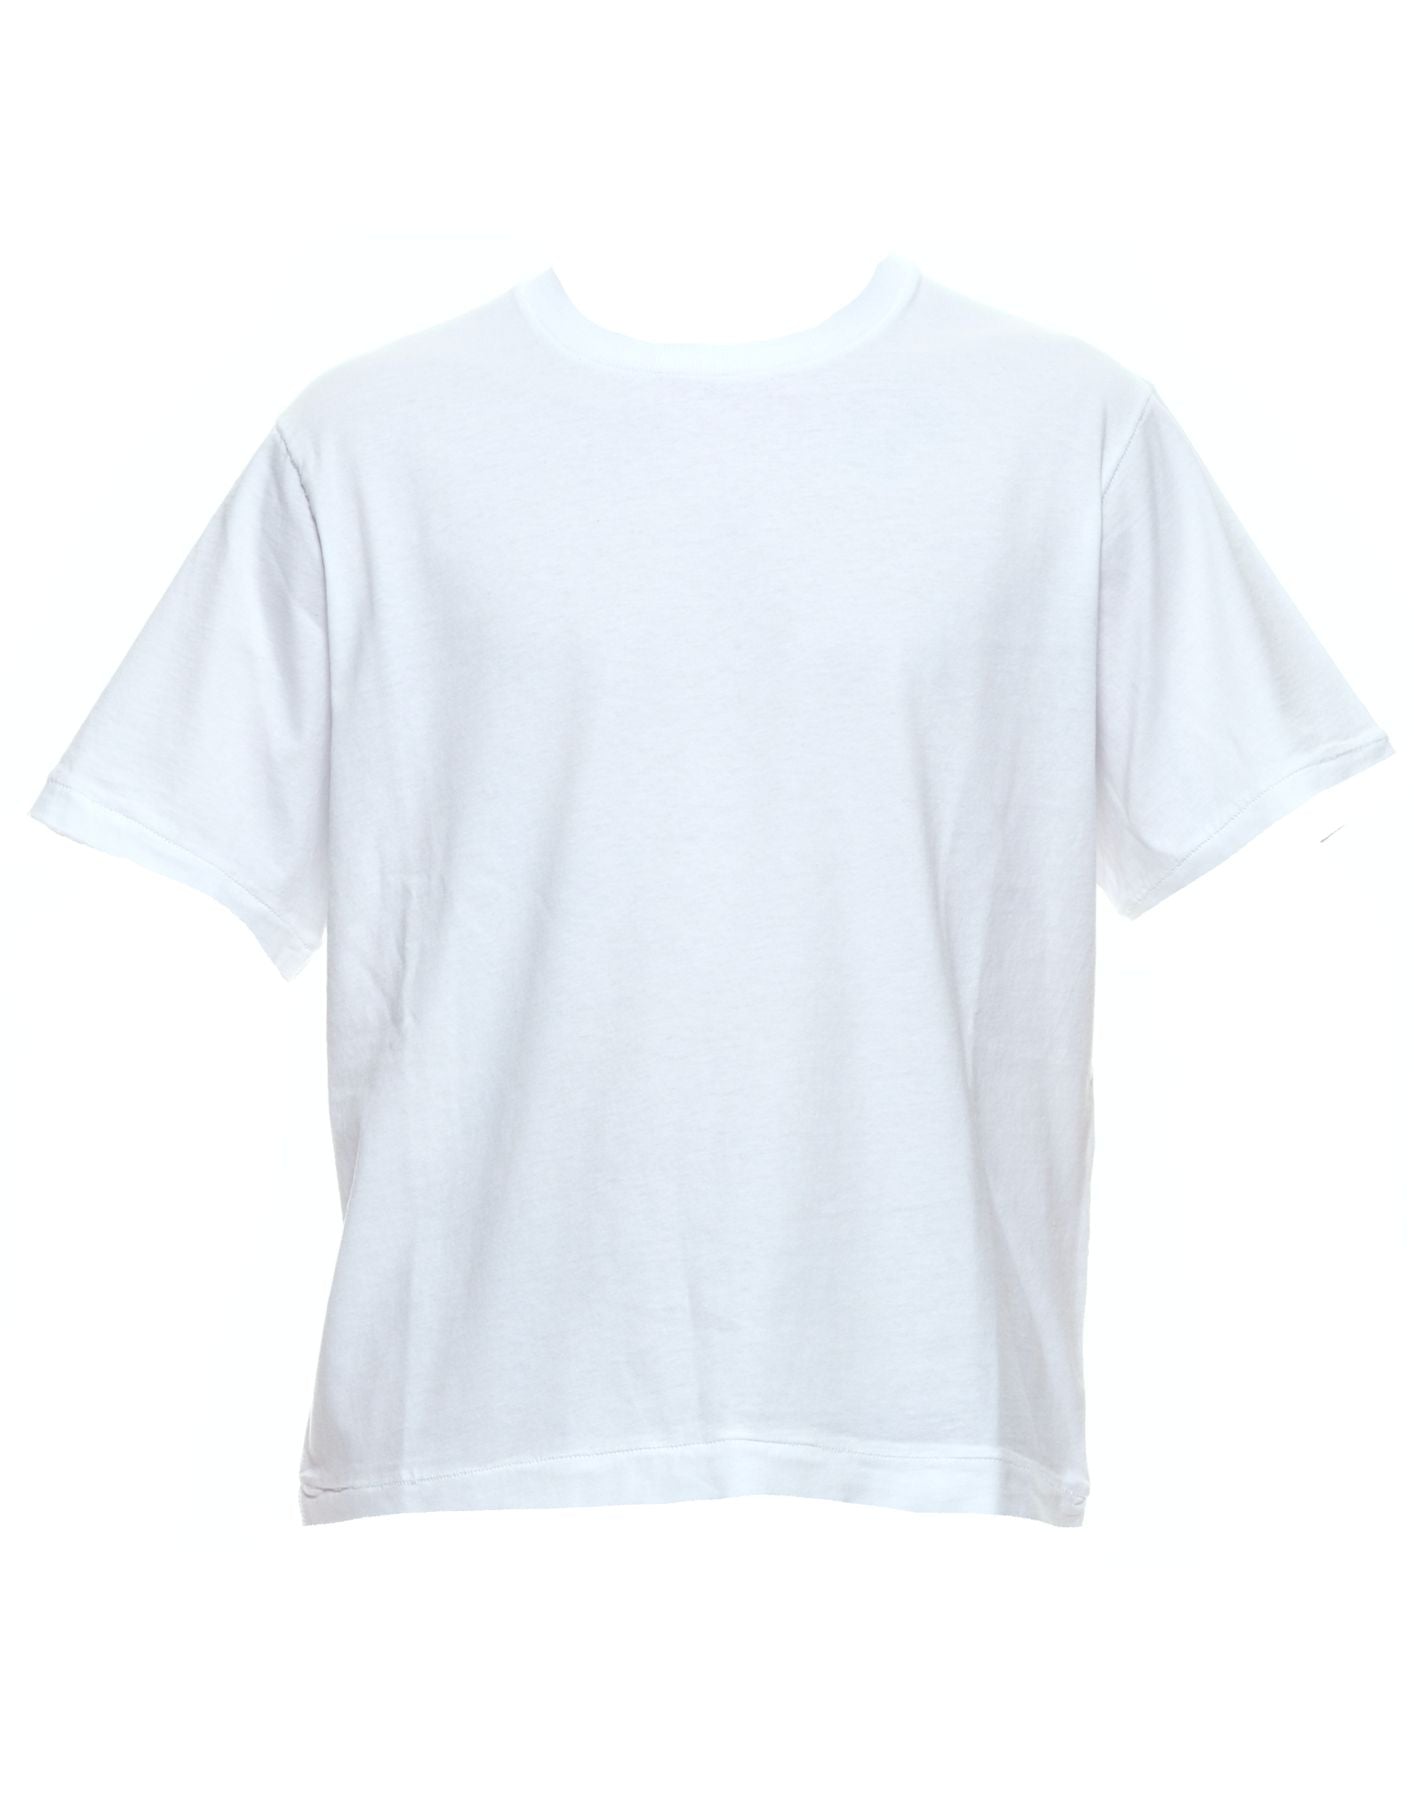 T-shirt pour l'homme pe24afu38 avorio Atomofactory